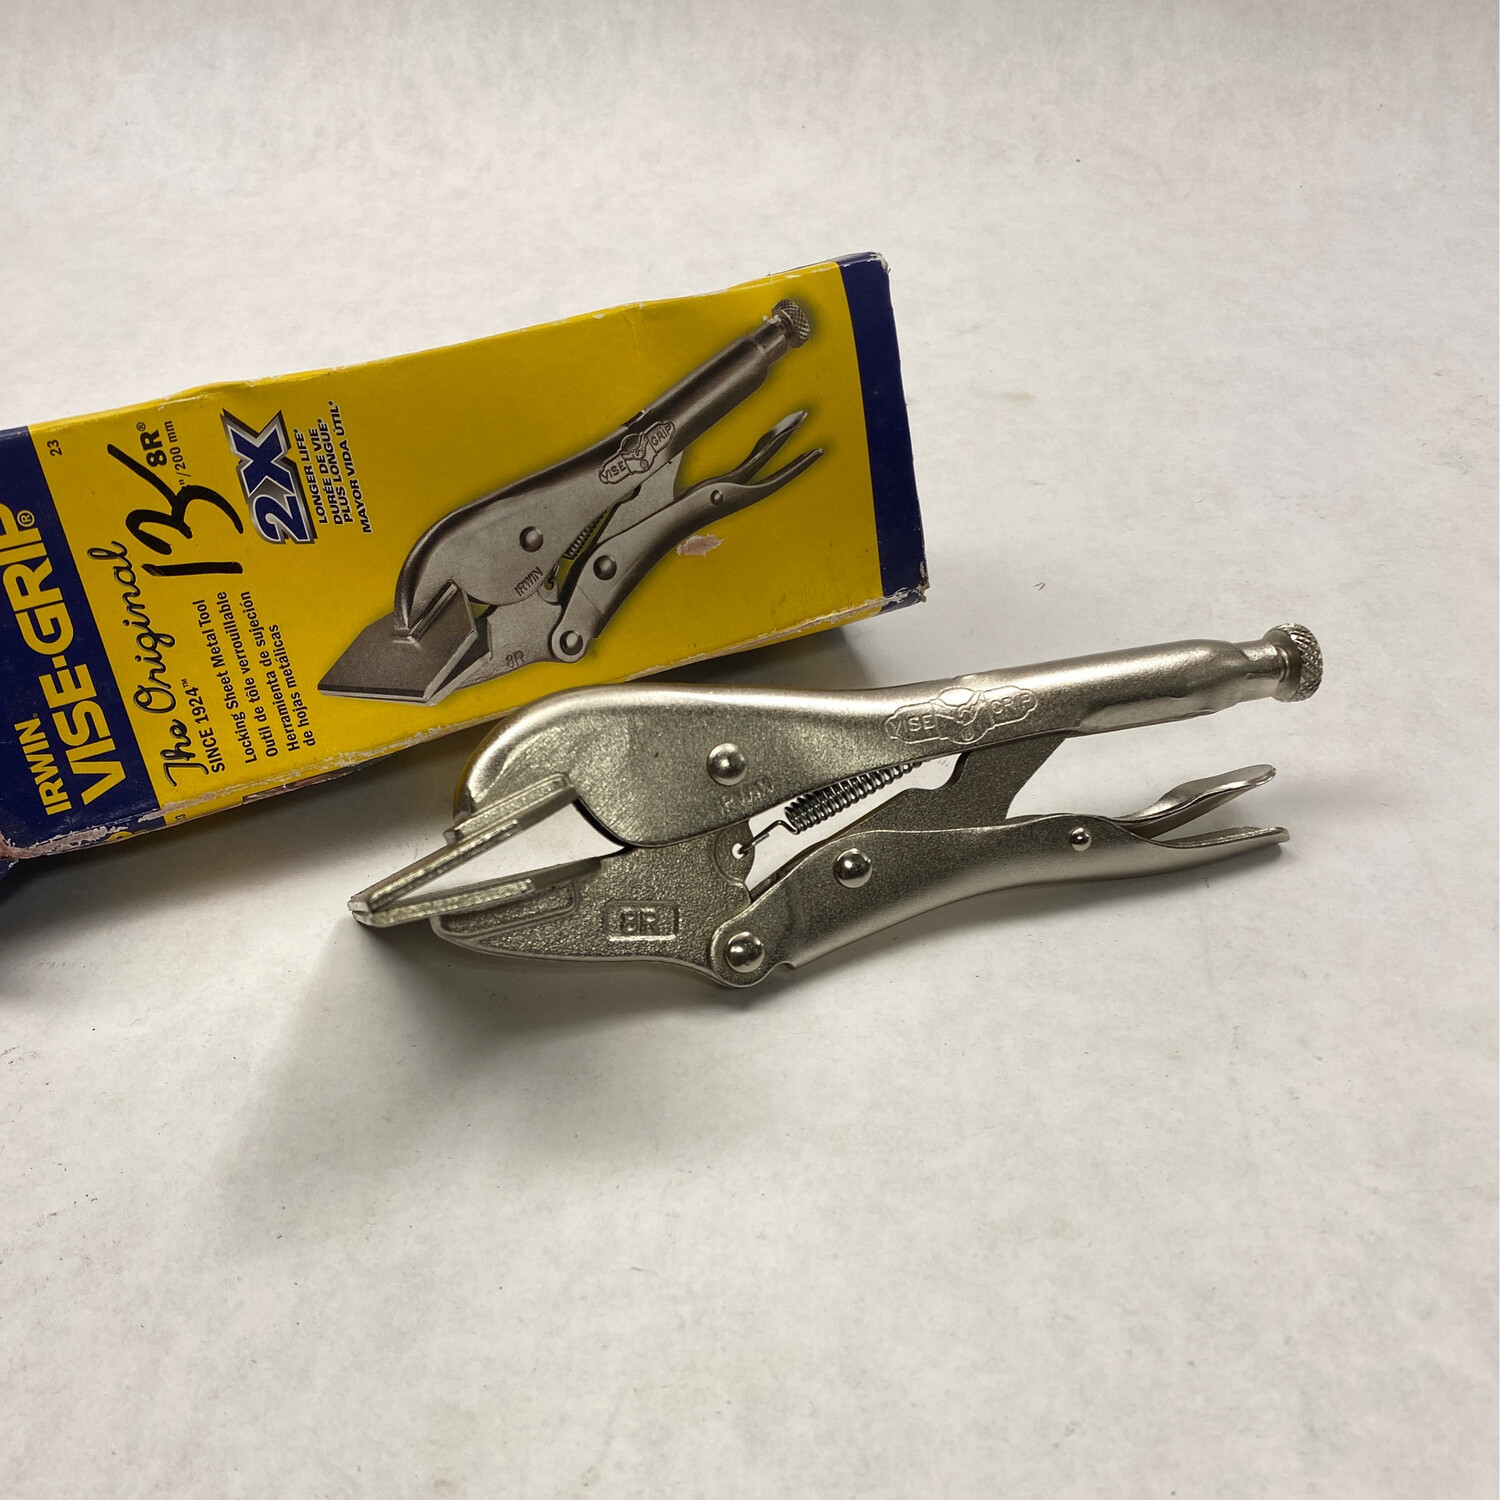 Irwin Vise Grip Sheet Metal Tool Locking Pliers, 8R